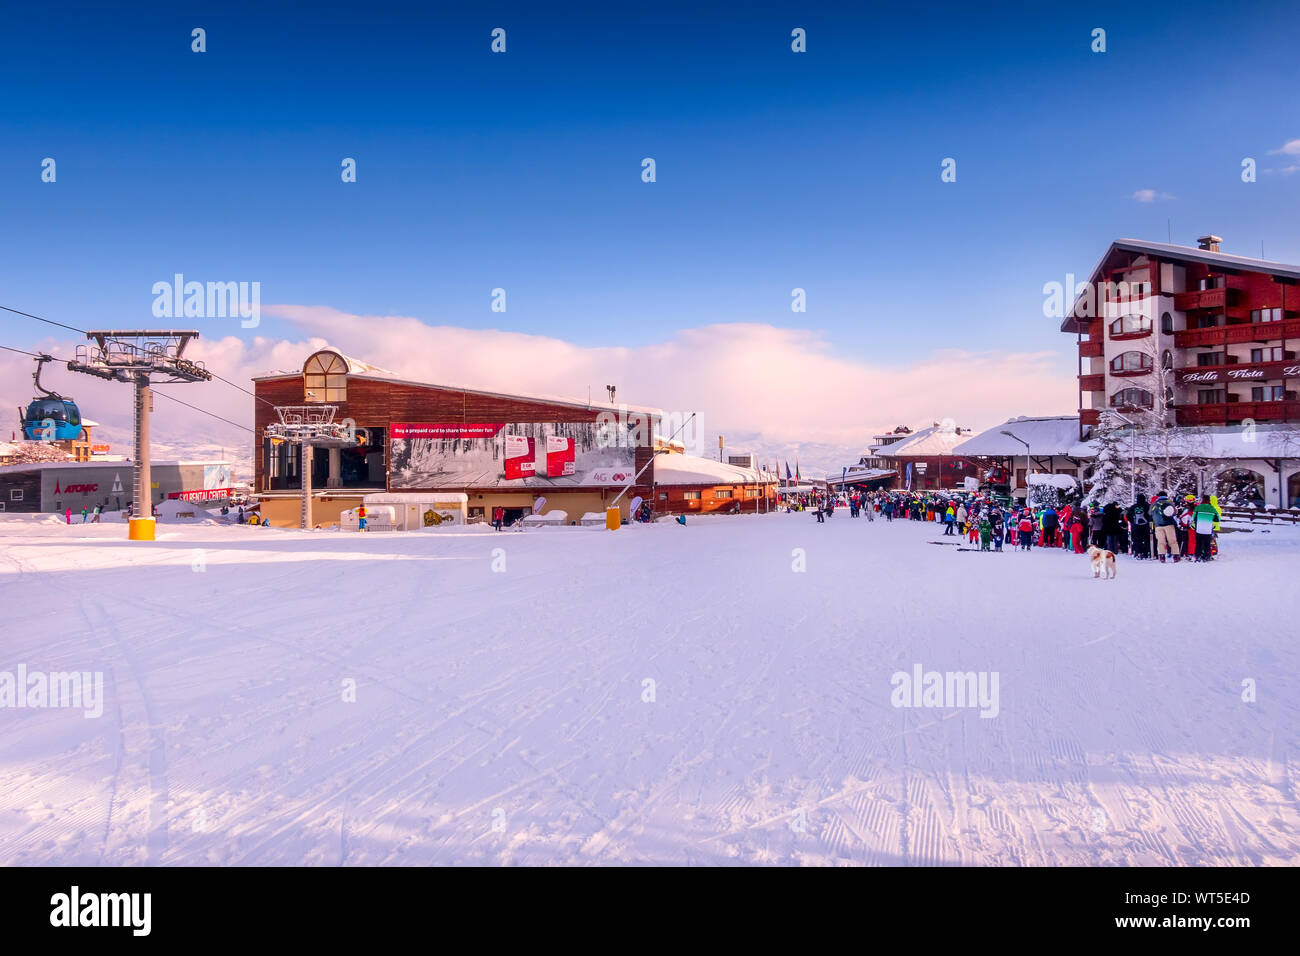 Bansko, Bulgarien - 28. Februar 2018: Bansko Ski Station, Seilbahn und Menschen Warteschlange Stockfoto